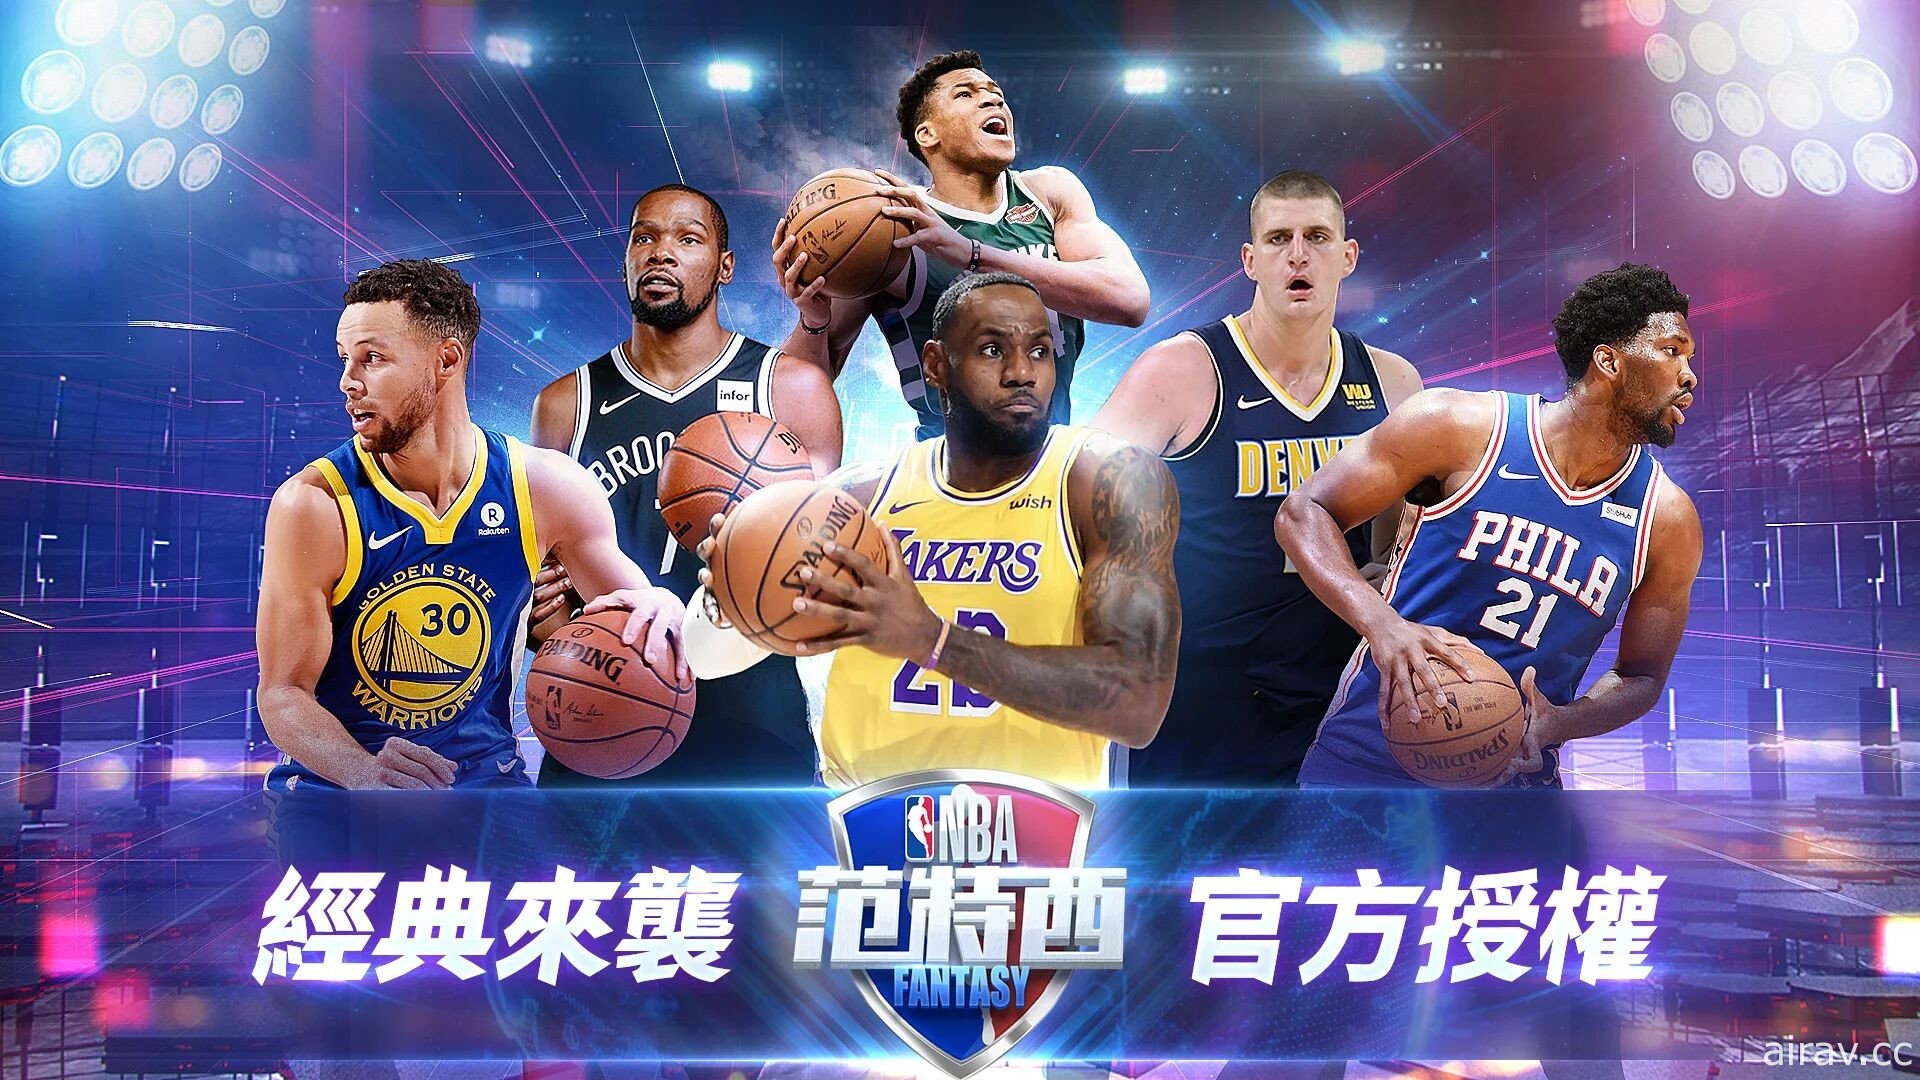 真实篮球模拟游戏《NBA 范特西》今日上市 打造专属梦幻阵容实现总冠军梦想